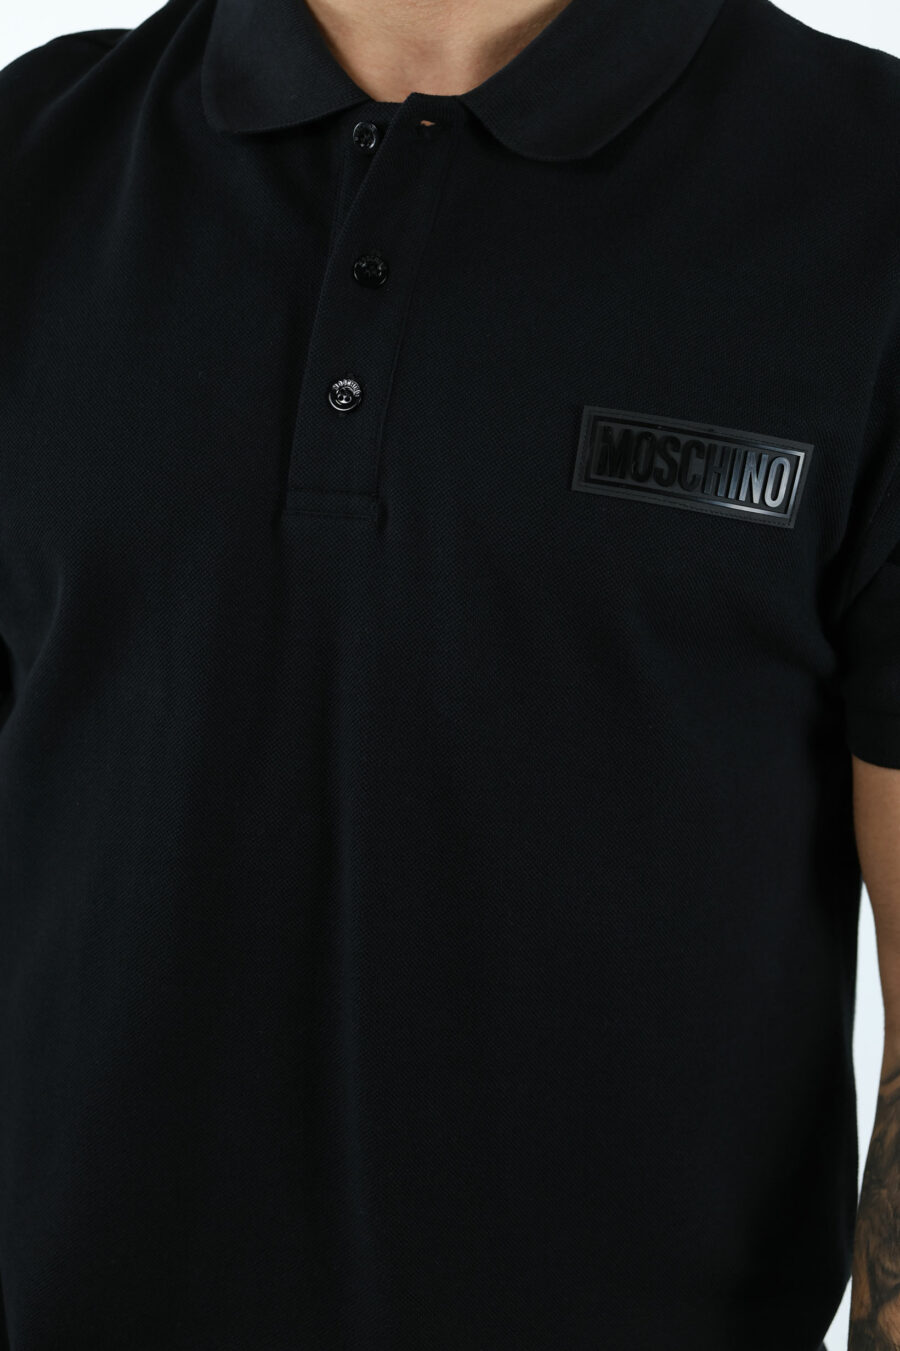 T-shirt noir avec étiquette blanche minilogue - 106966